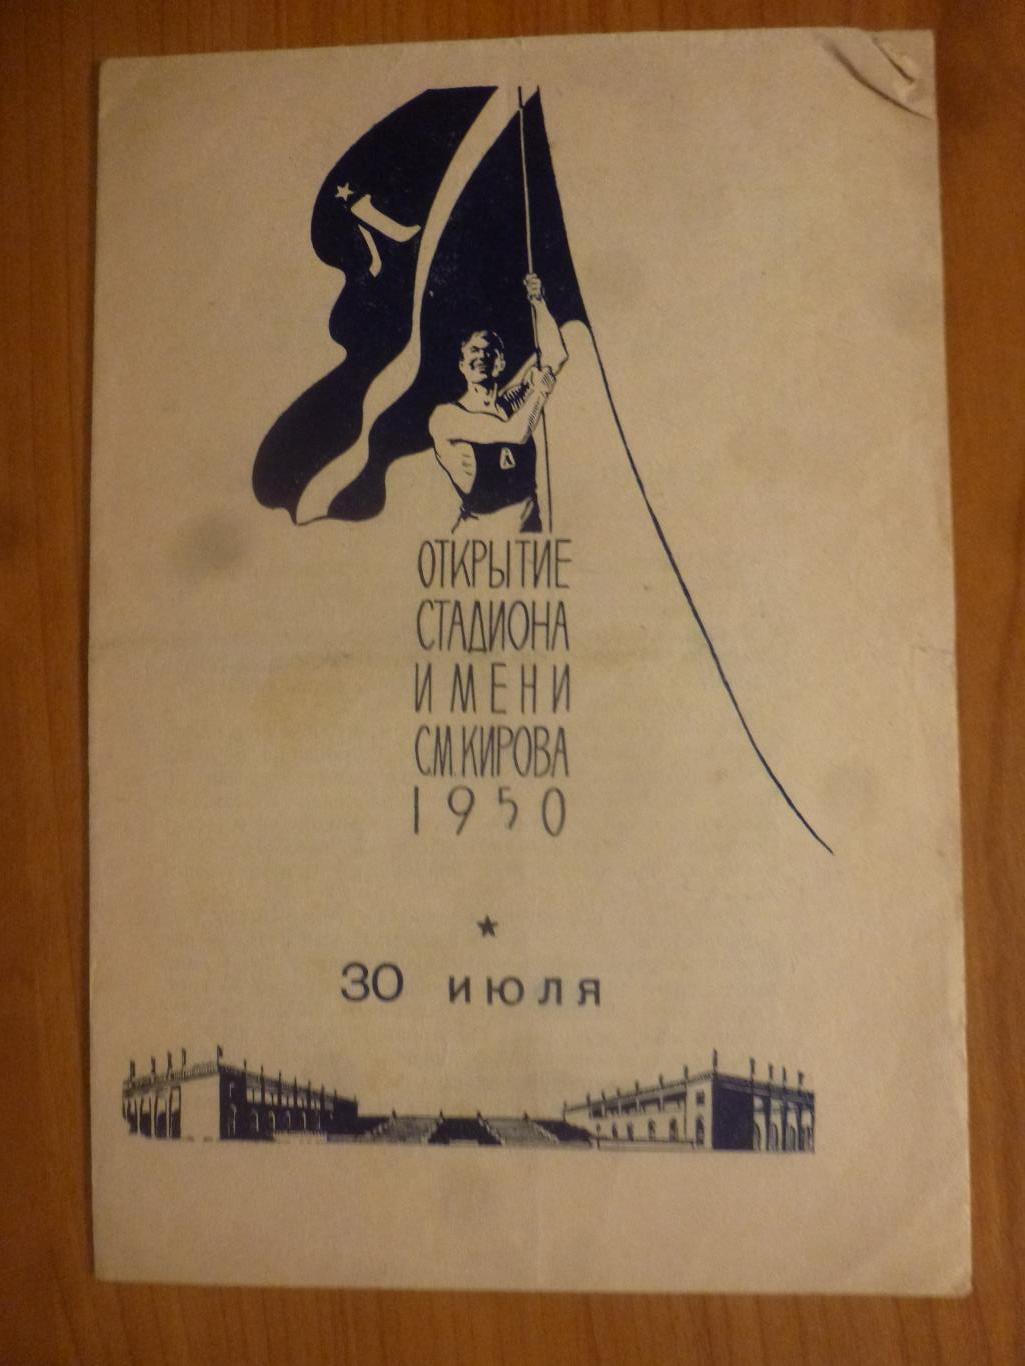 Зенит - Динамо Ленинград 30 июля 1950 года (открытие стадиона им. Кирова)